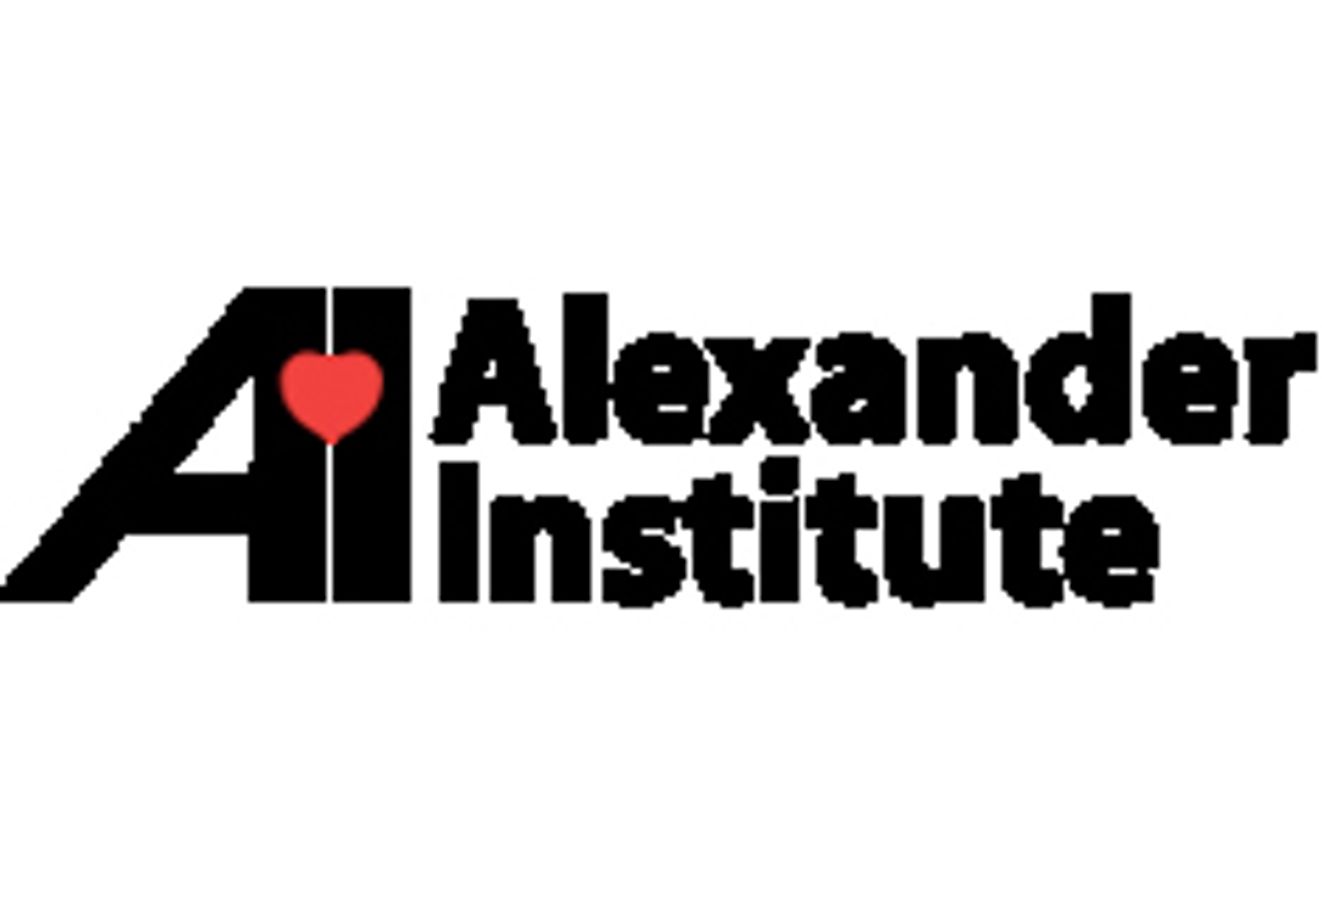 Alexander Institute